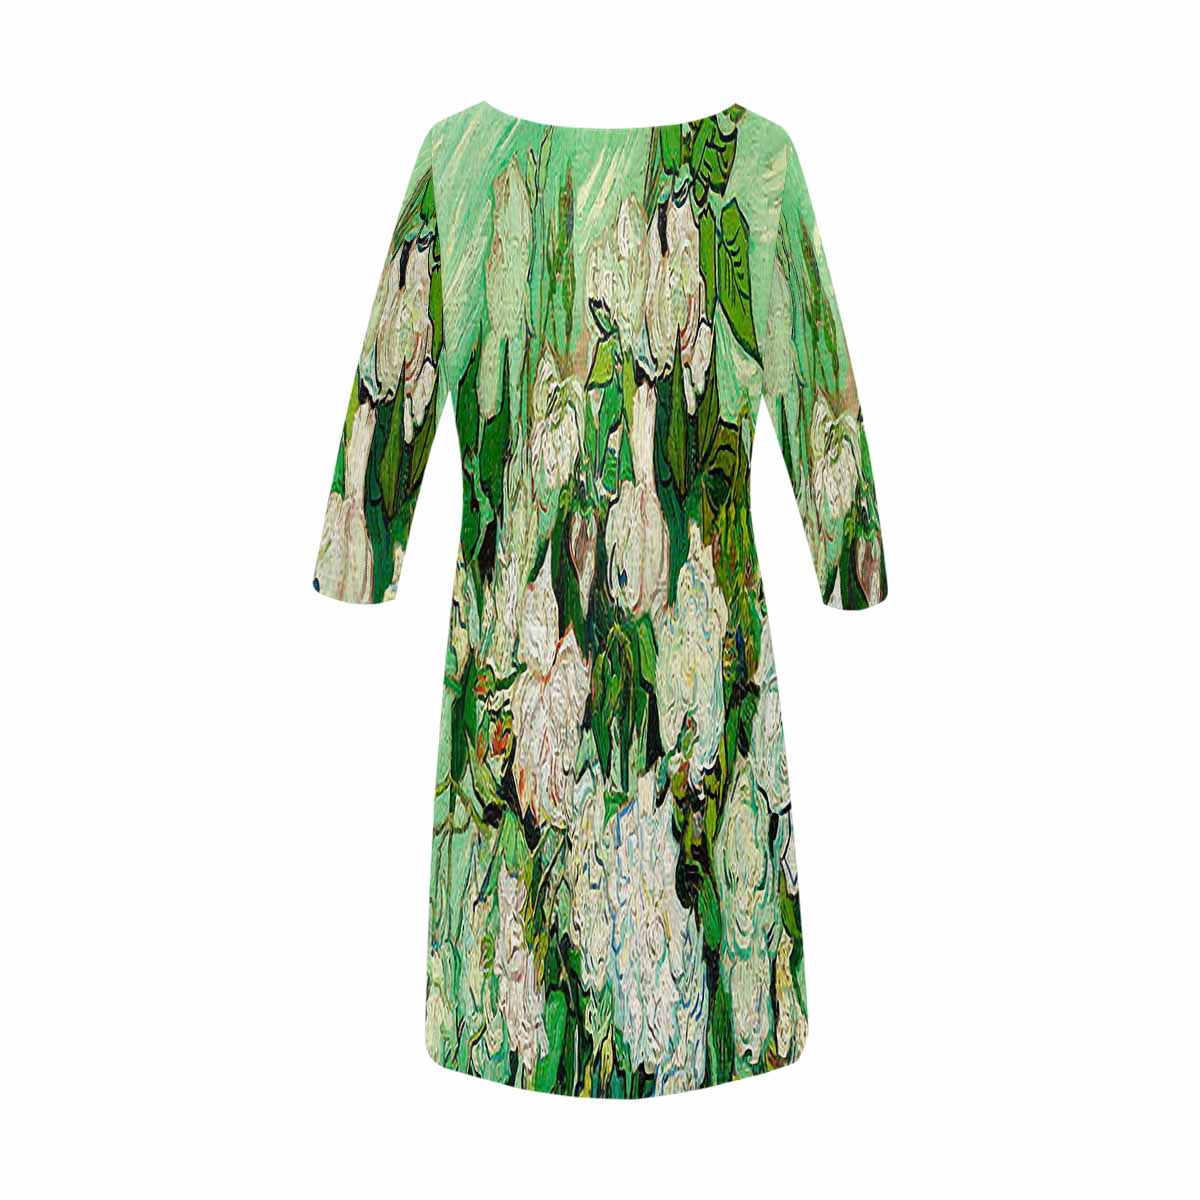 Vintage floral loose dress, model D29532 Design 45